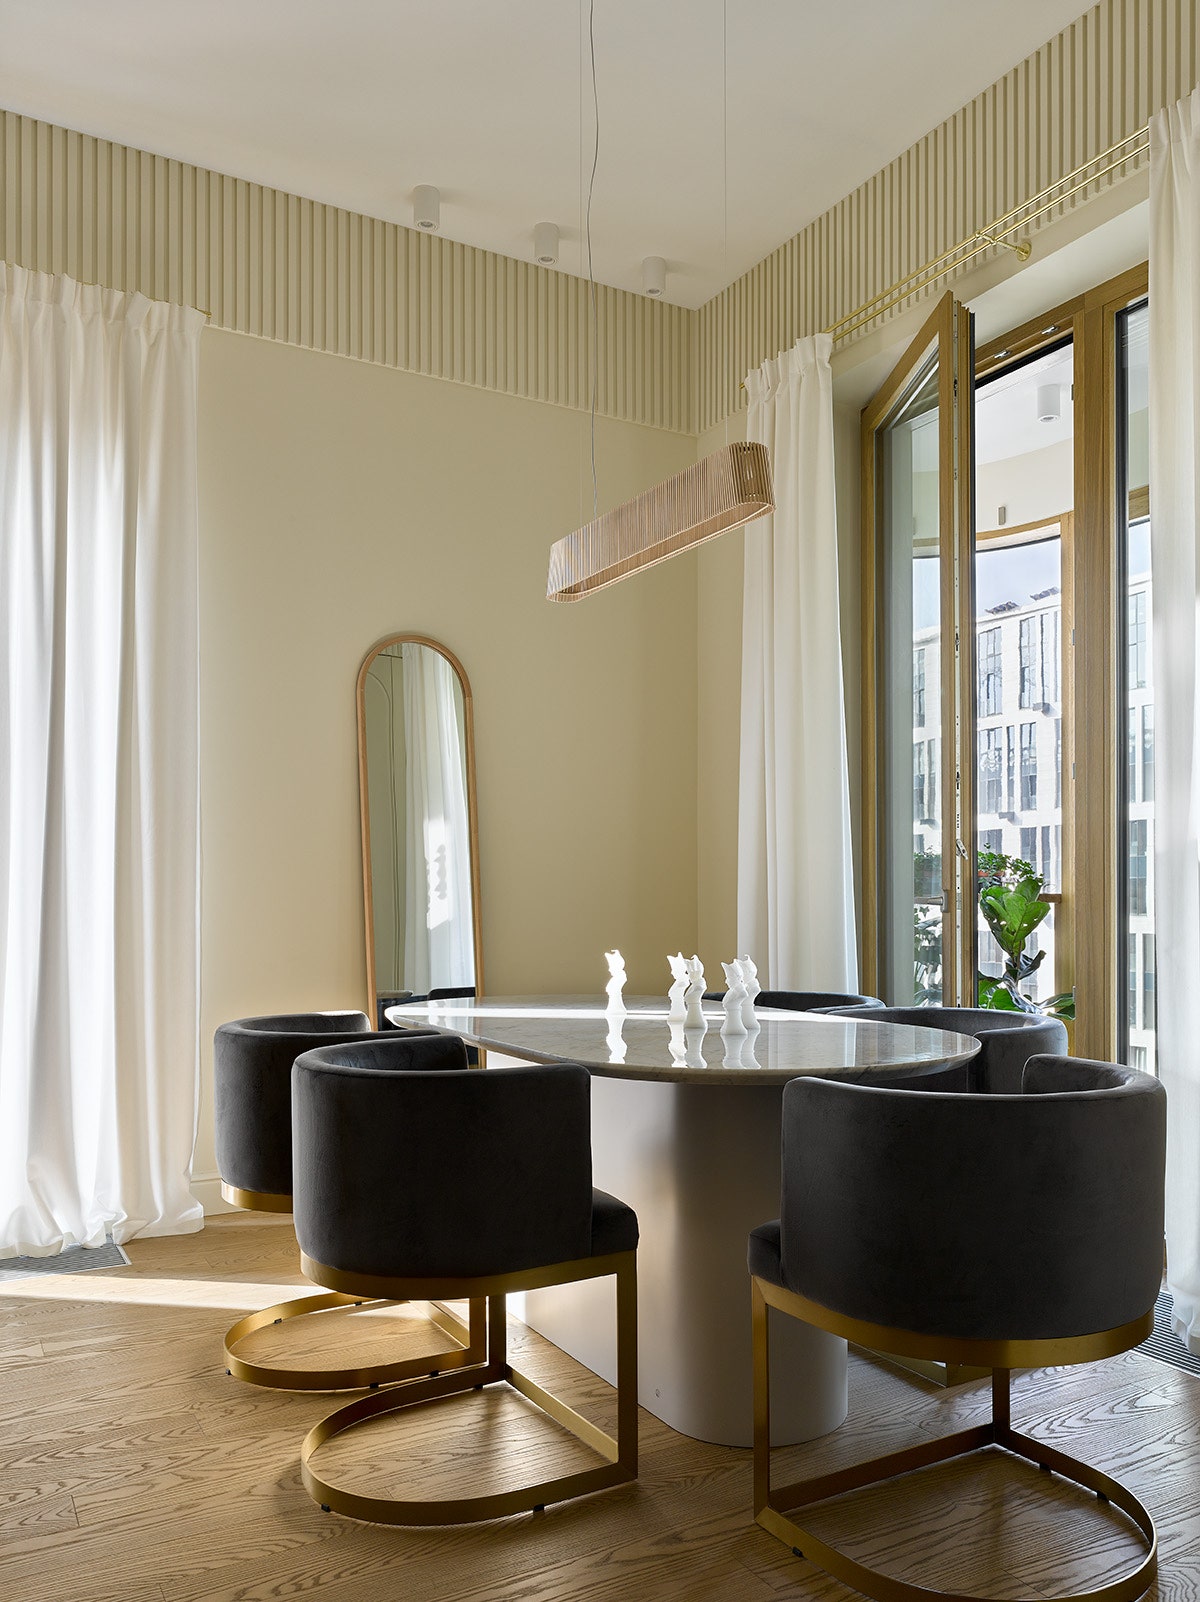 Фрагмент кухнигостиной. Стол сделан на заказ стулья Nordal светильник Secto Design зеркало Zara Home.